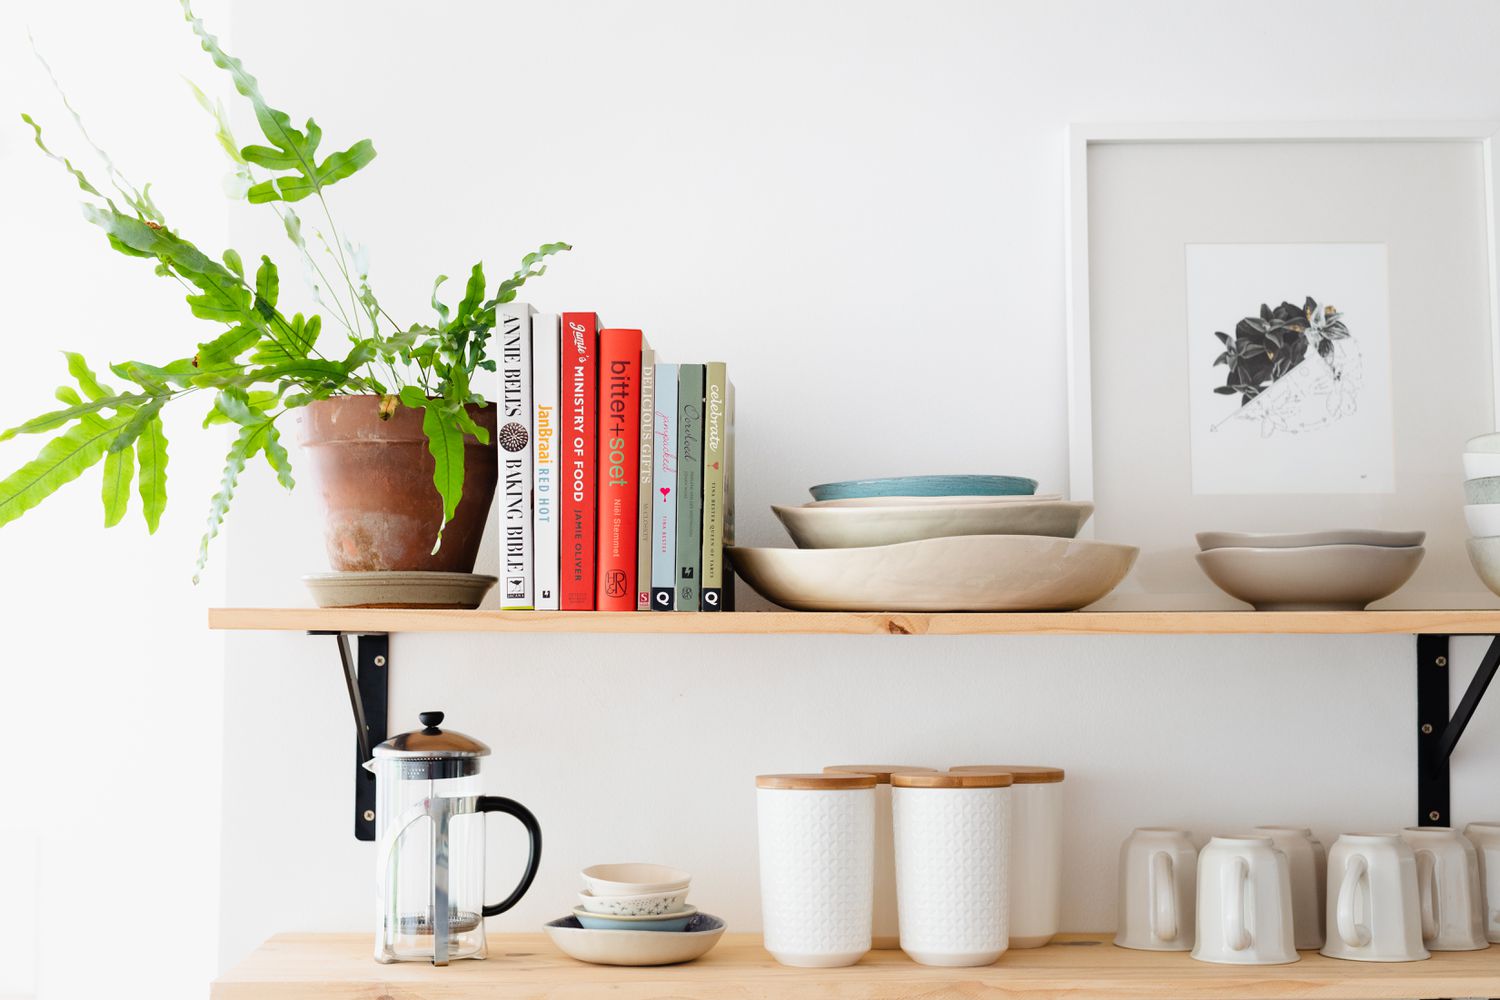 Holzregale mit Kochbüchern und Zimmerpflanzen neben Küchengeräten und Kaffeemaschine